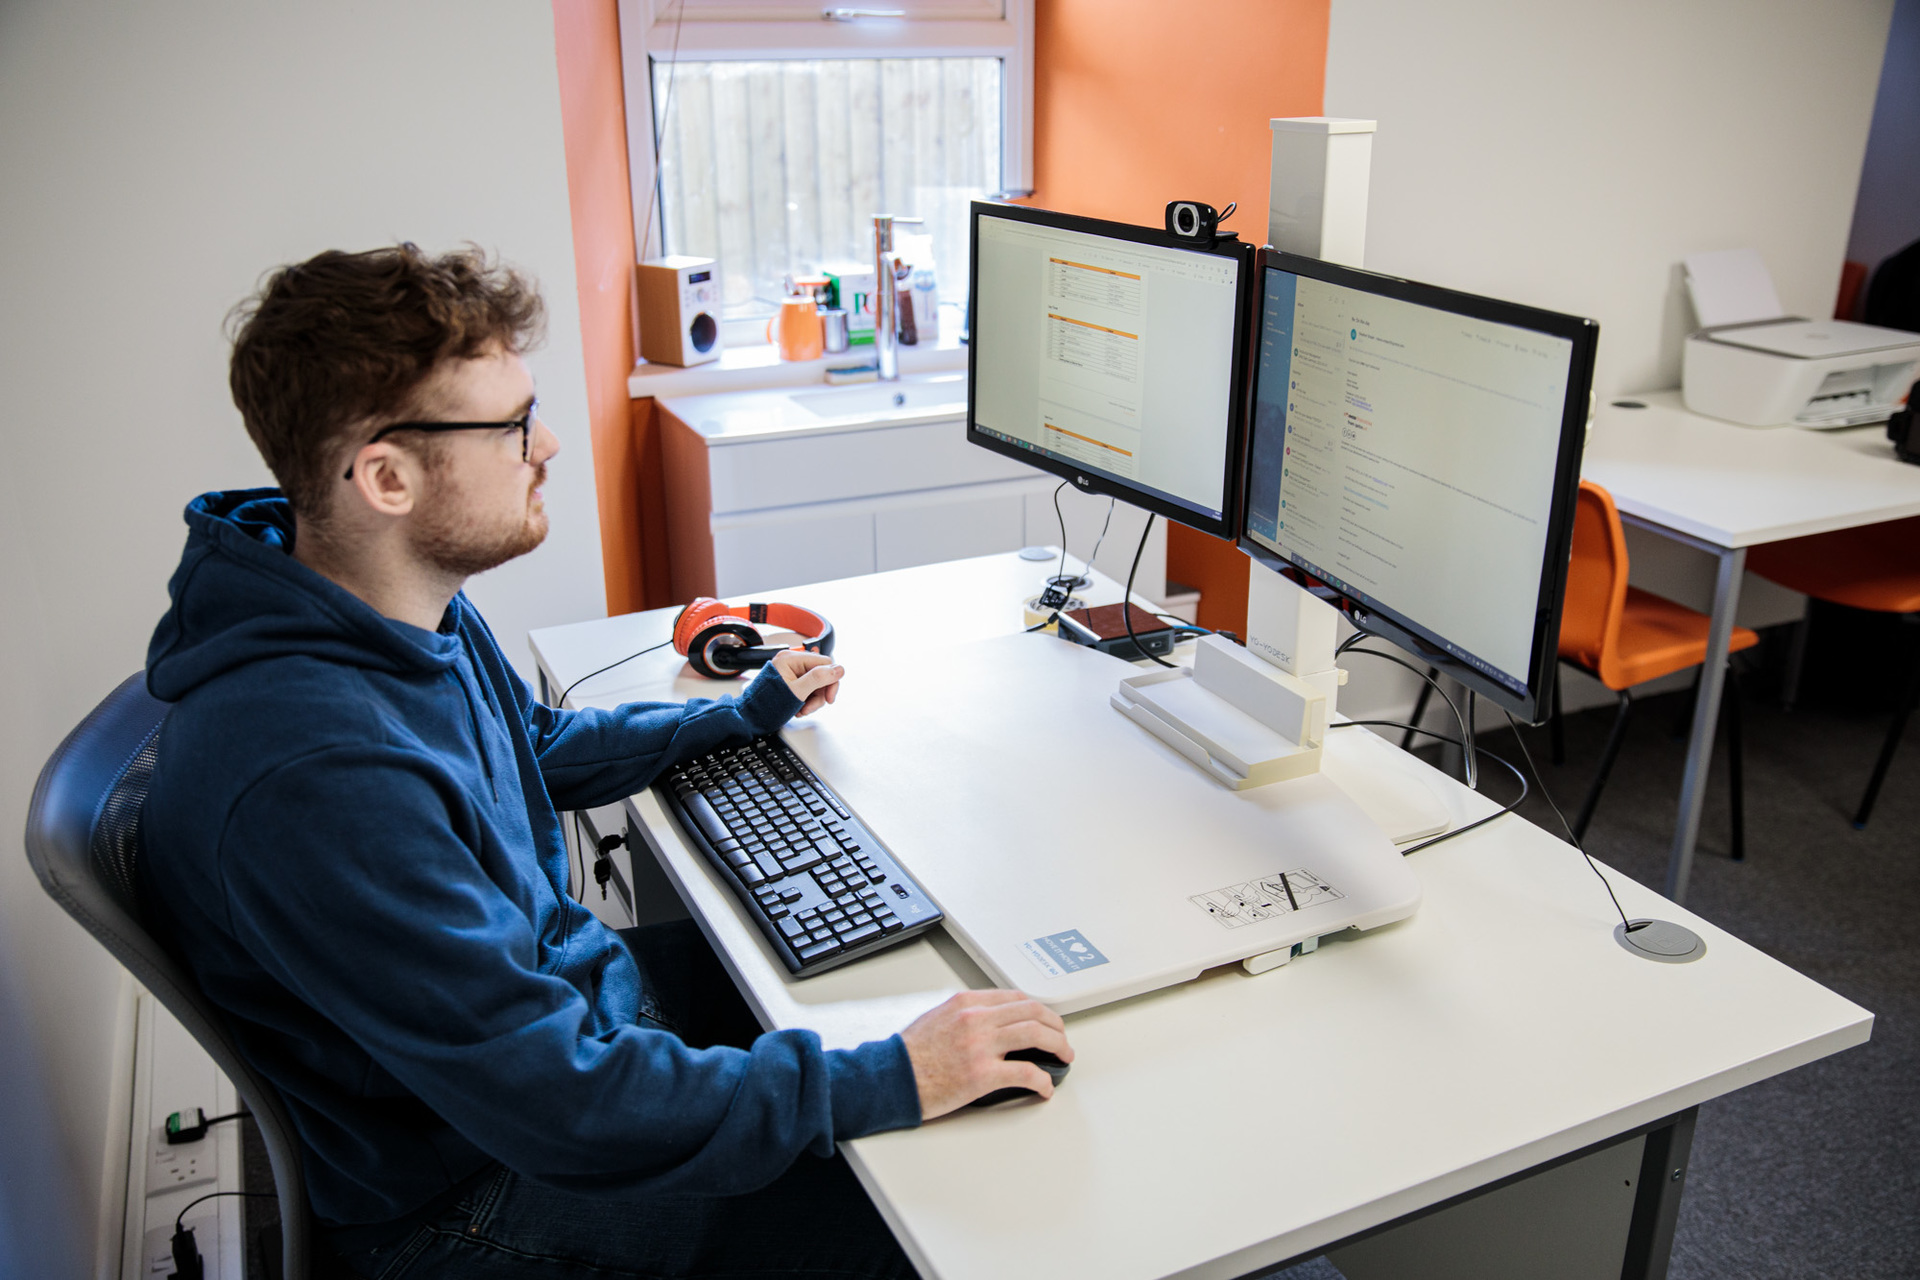 A man sat at a desk, looking at his computer